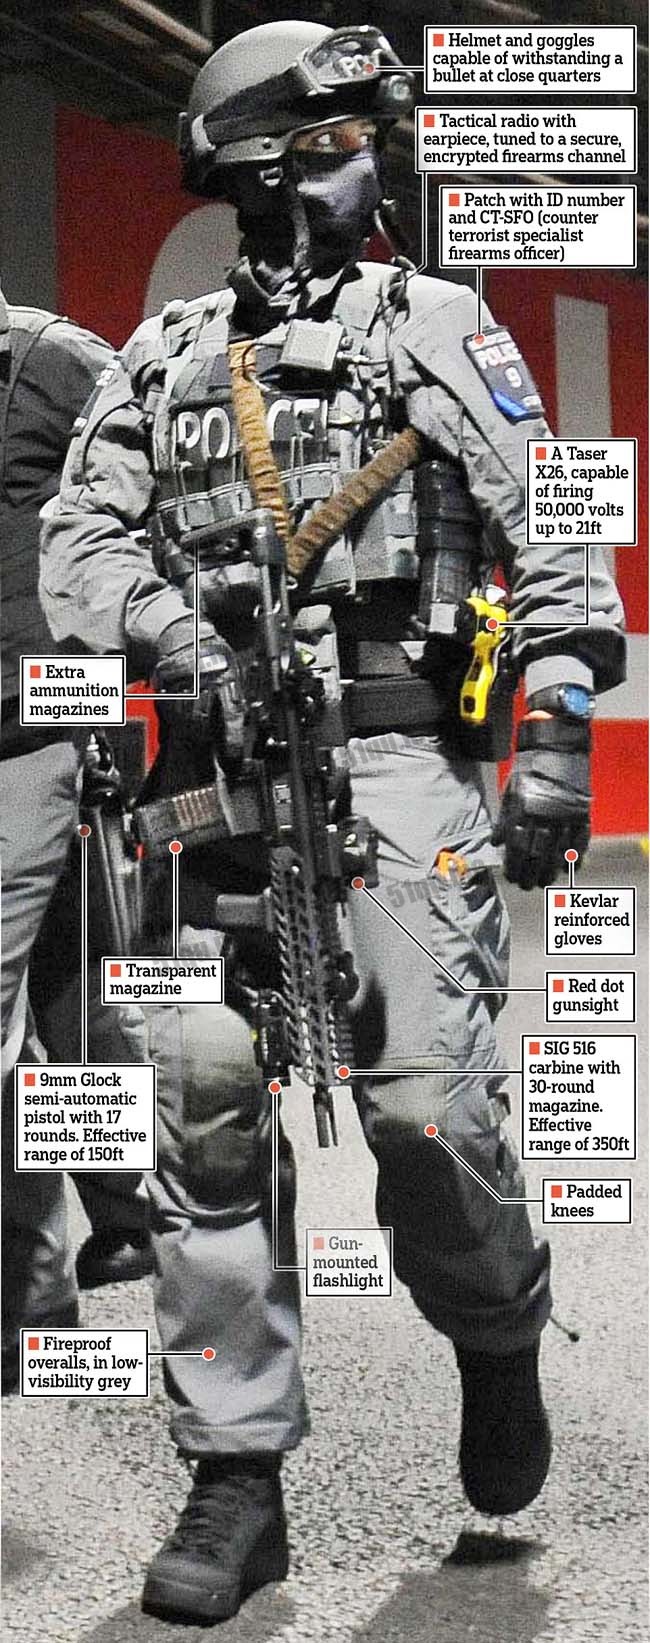 英国反恐警察军事装备